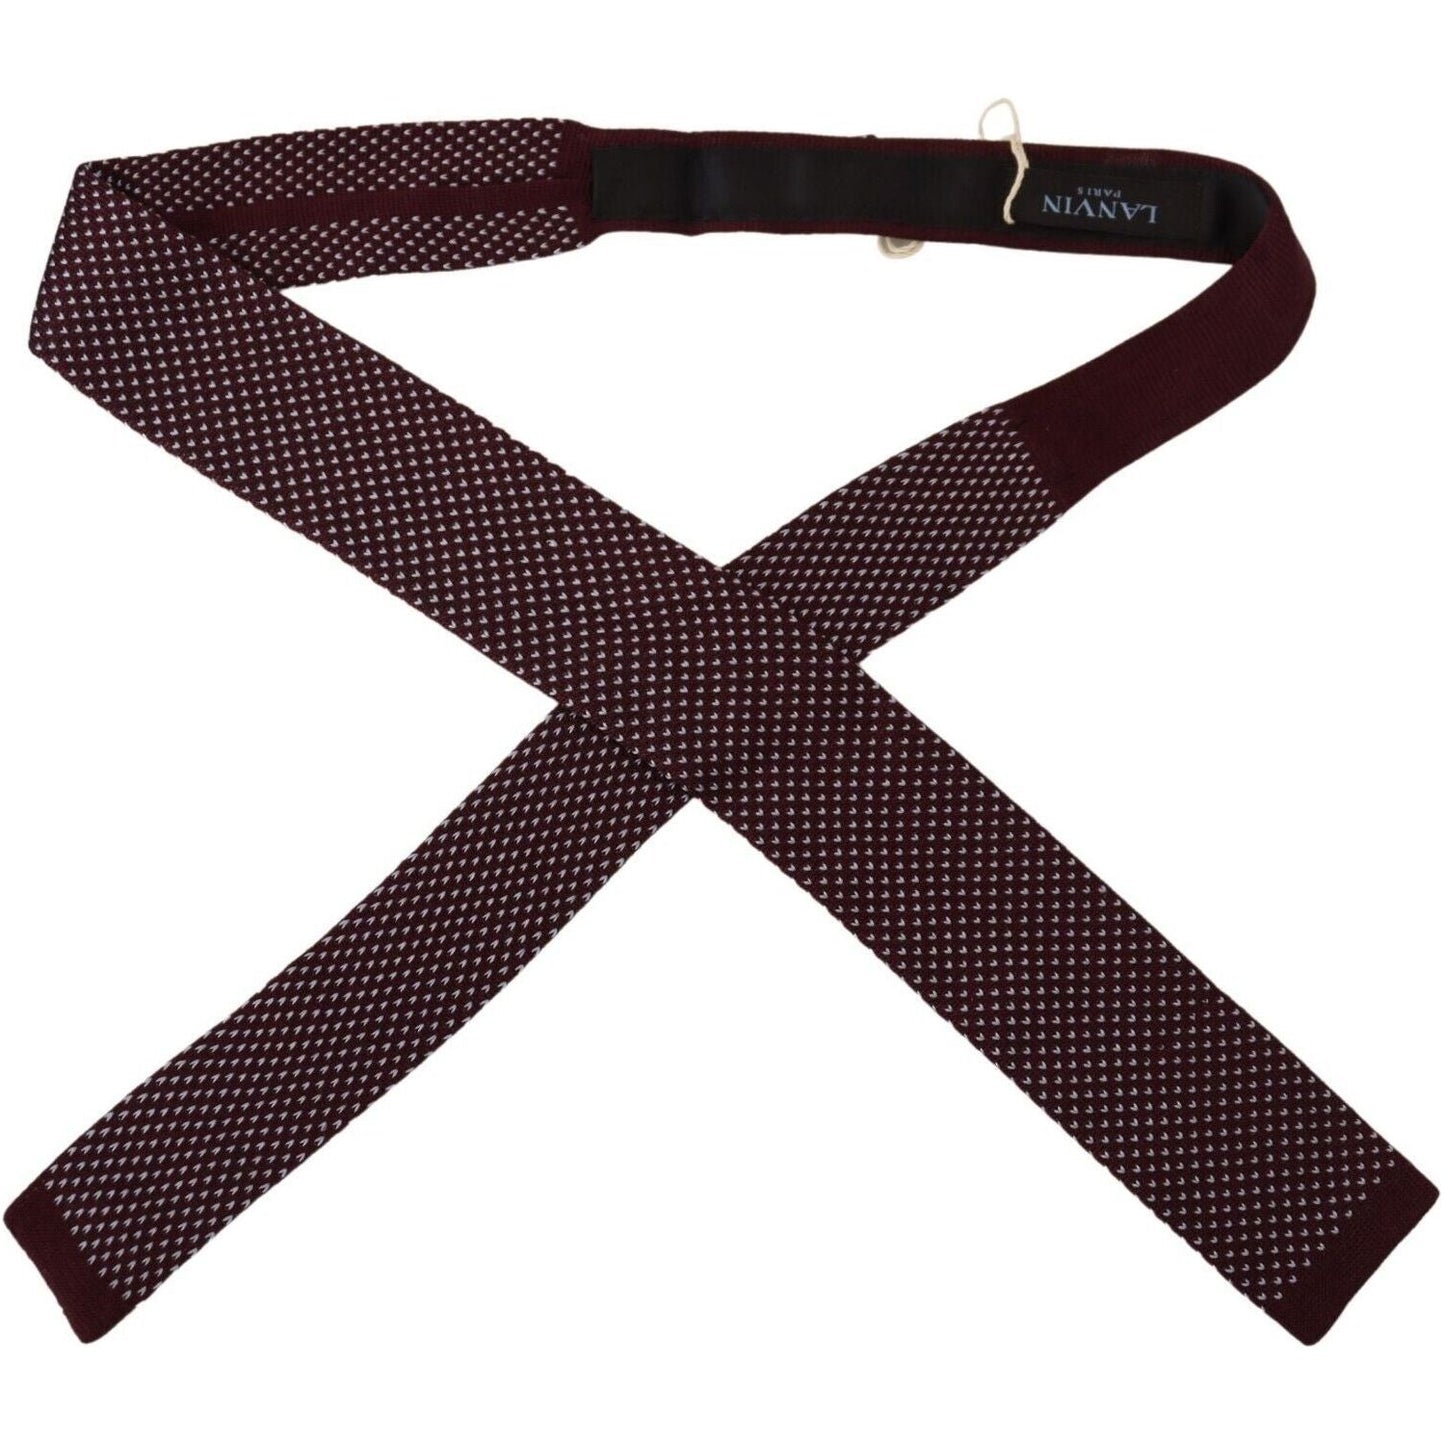 Lanvin Elegant Bordeaux Silk Bow Tie bordeaux-dotted-classic-necktie-adjustable-men-silk-tie s-l1600-13-3-e2b48070-4a1.jpg